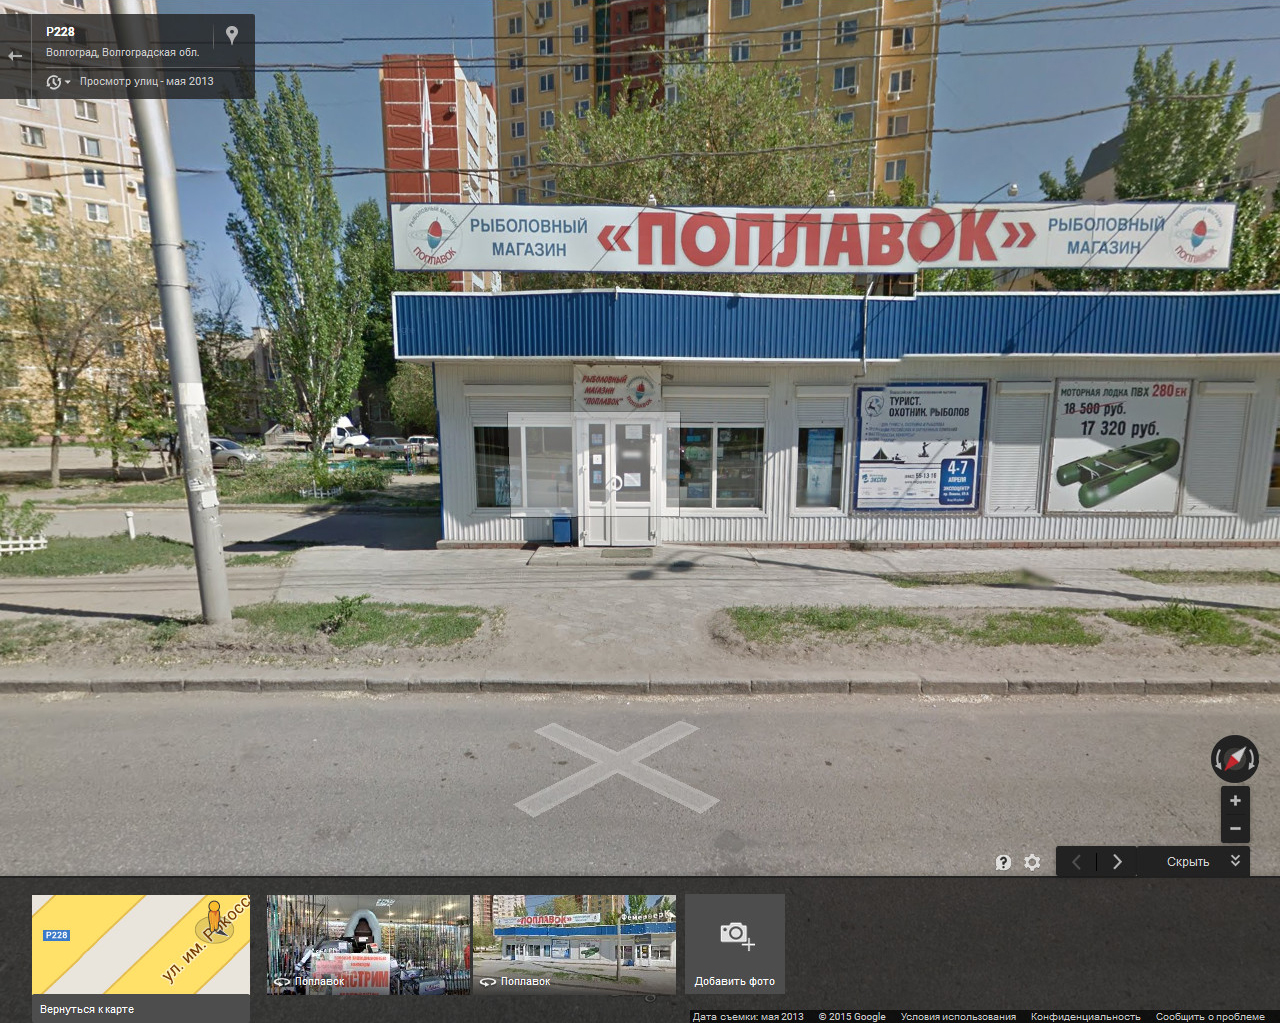 Вид на магазин Поплавок из просмотра улиц Google